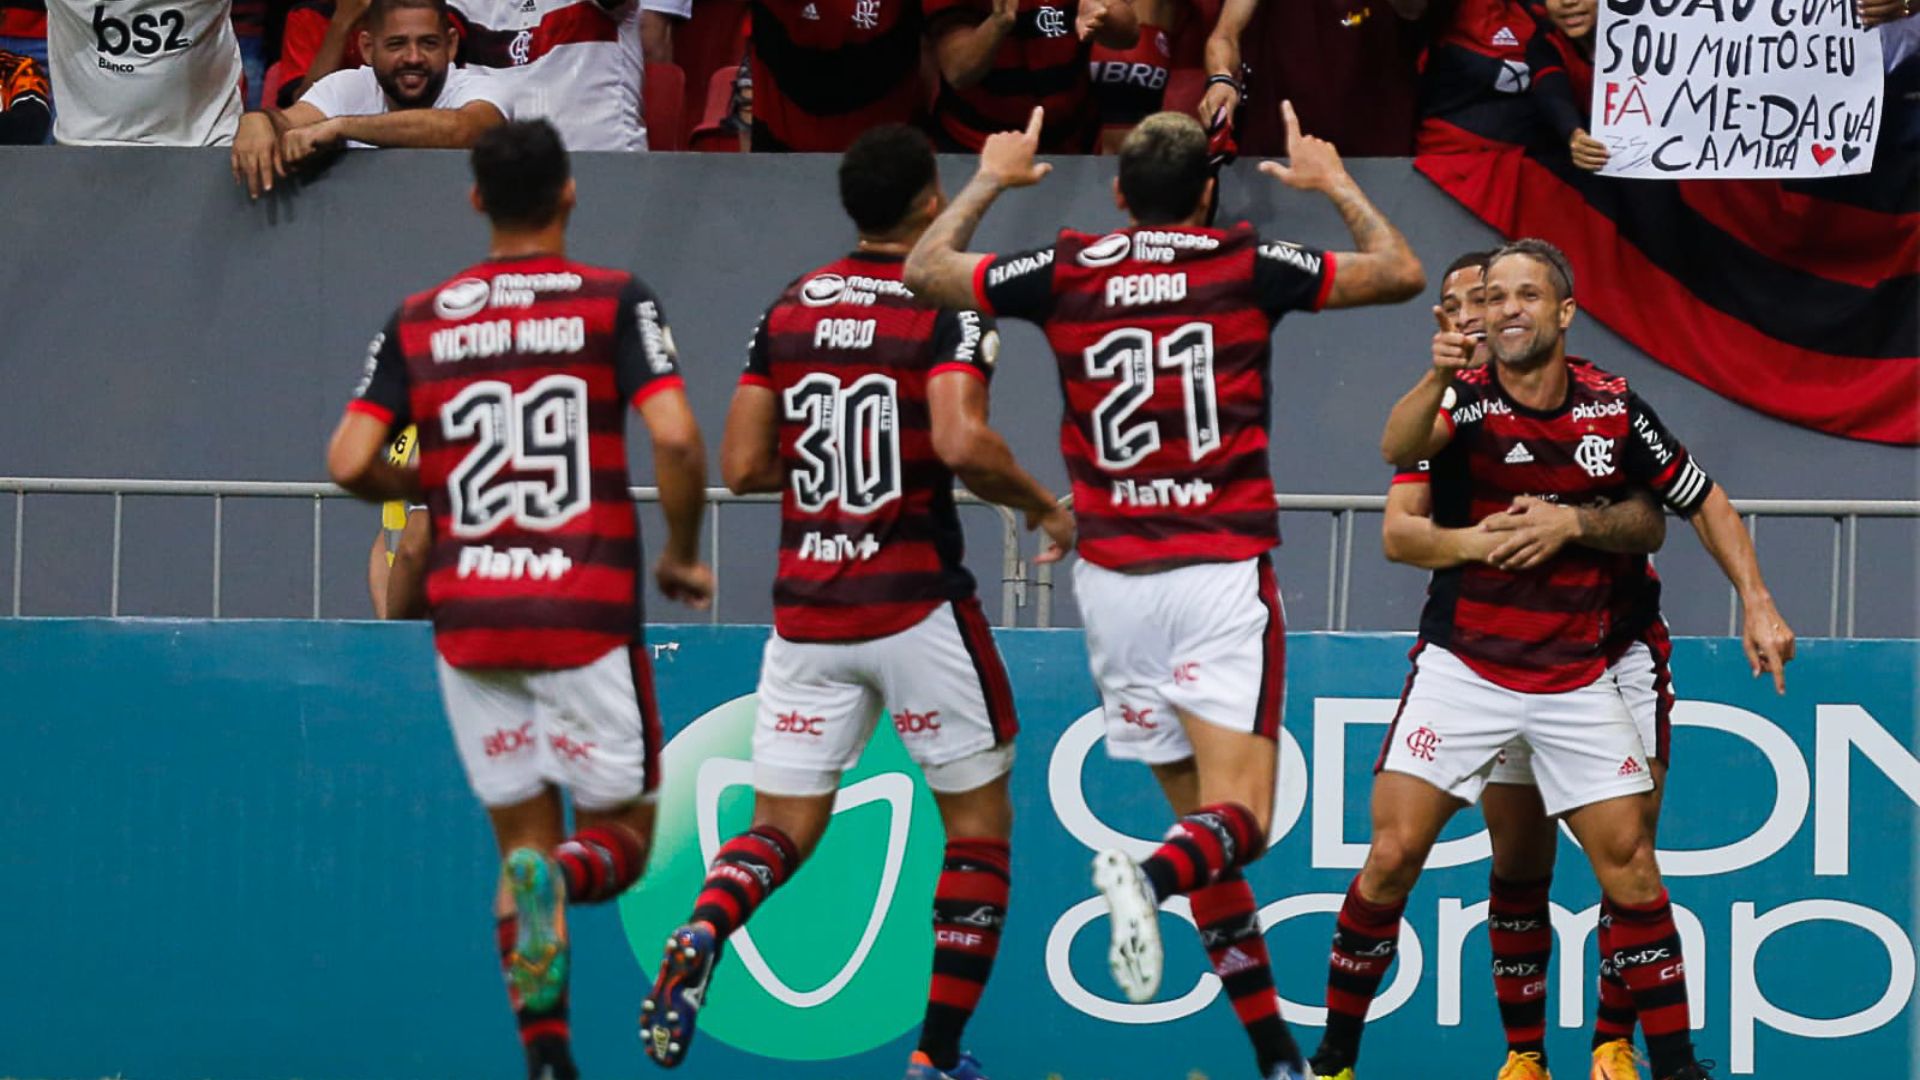 No primeiro turno, o Flamengo venceu o Coritiba por 2 a 0, com gols de Diego e Gustavo Henrique (Crédito: Gilvan de Souza / Flamengo)